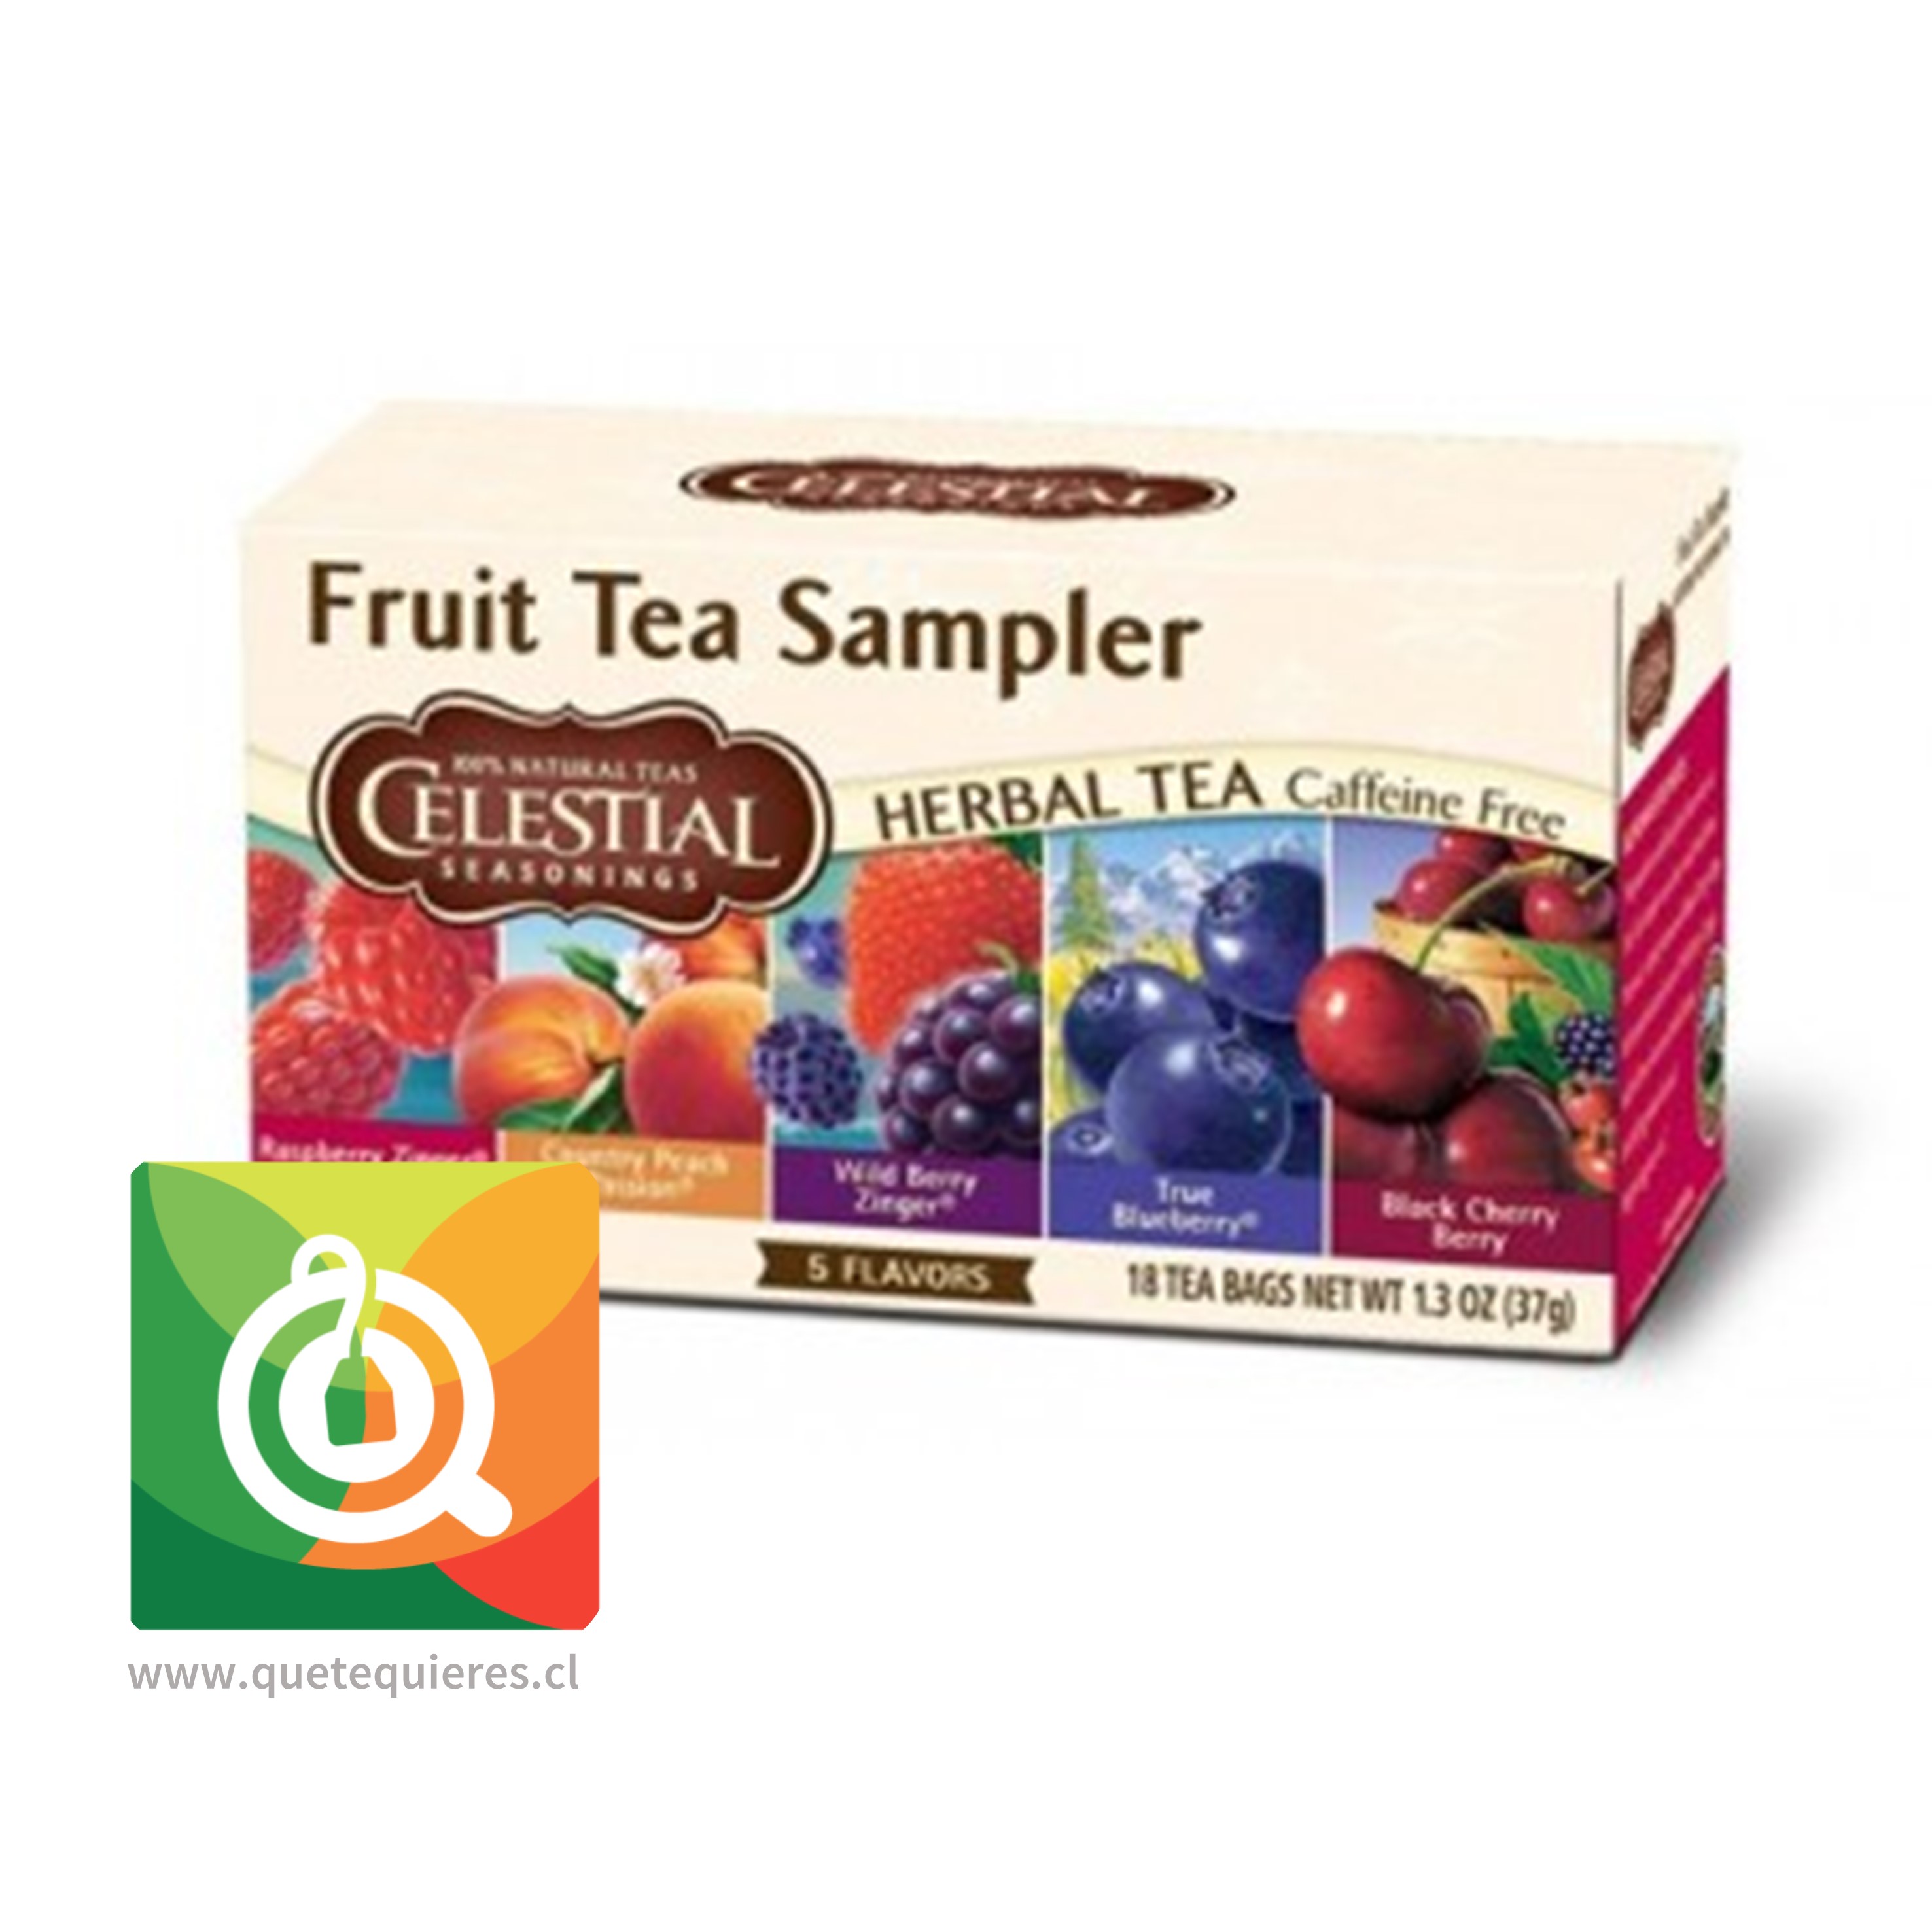 Celestial Infusiones Frutales - Fruit Tea Sampler